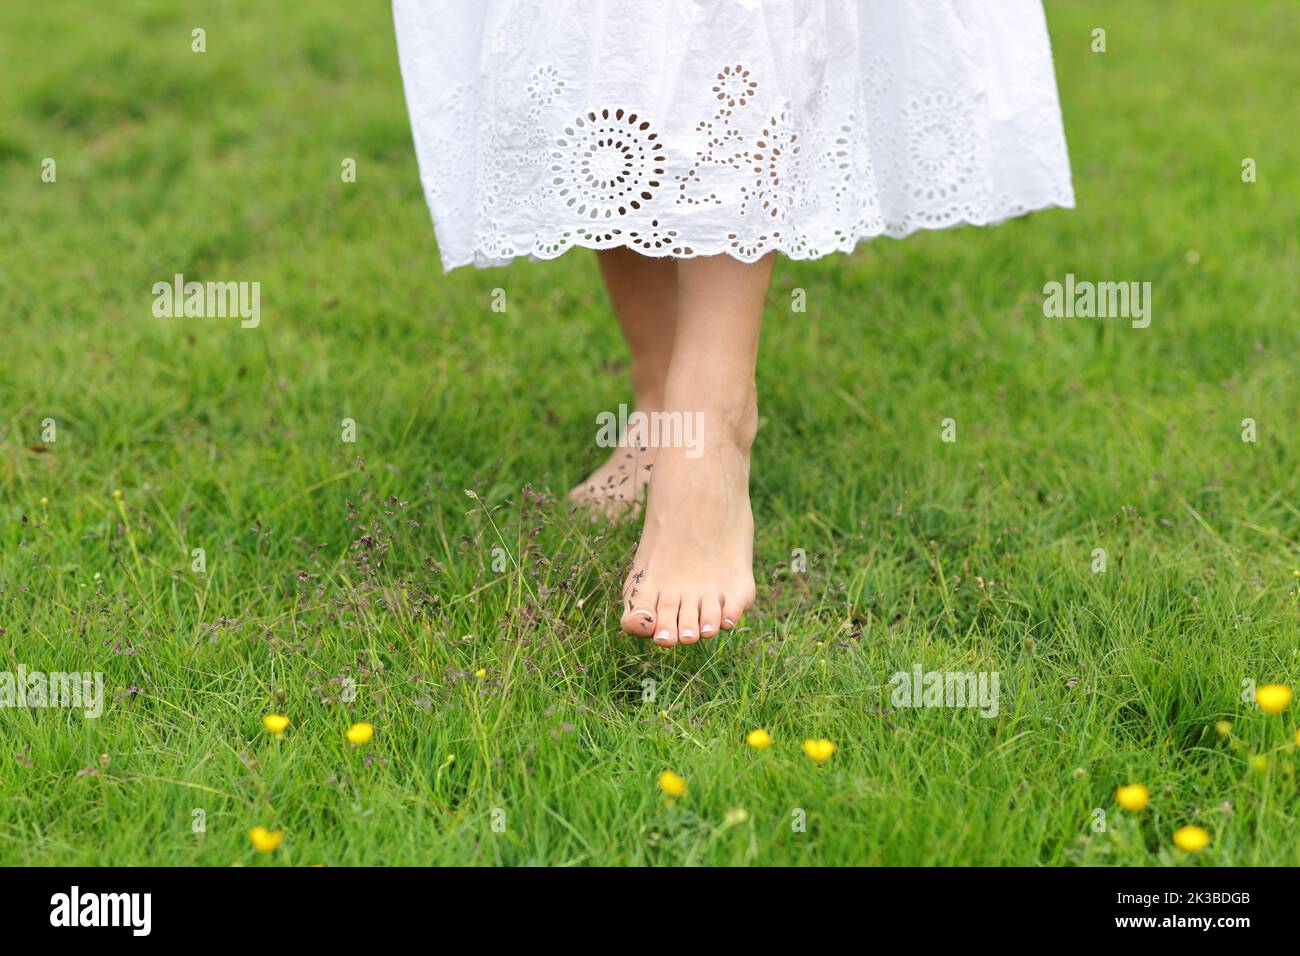 Vista frontal retrato de una mujer con los pies descalzos caminando sobre la hierba Foto de stock